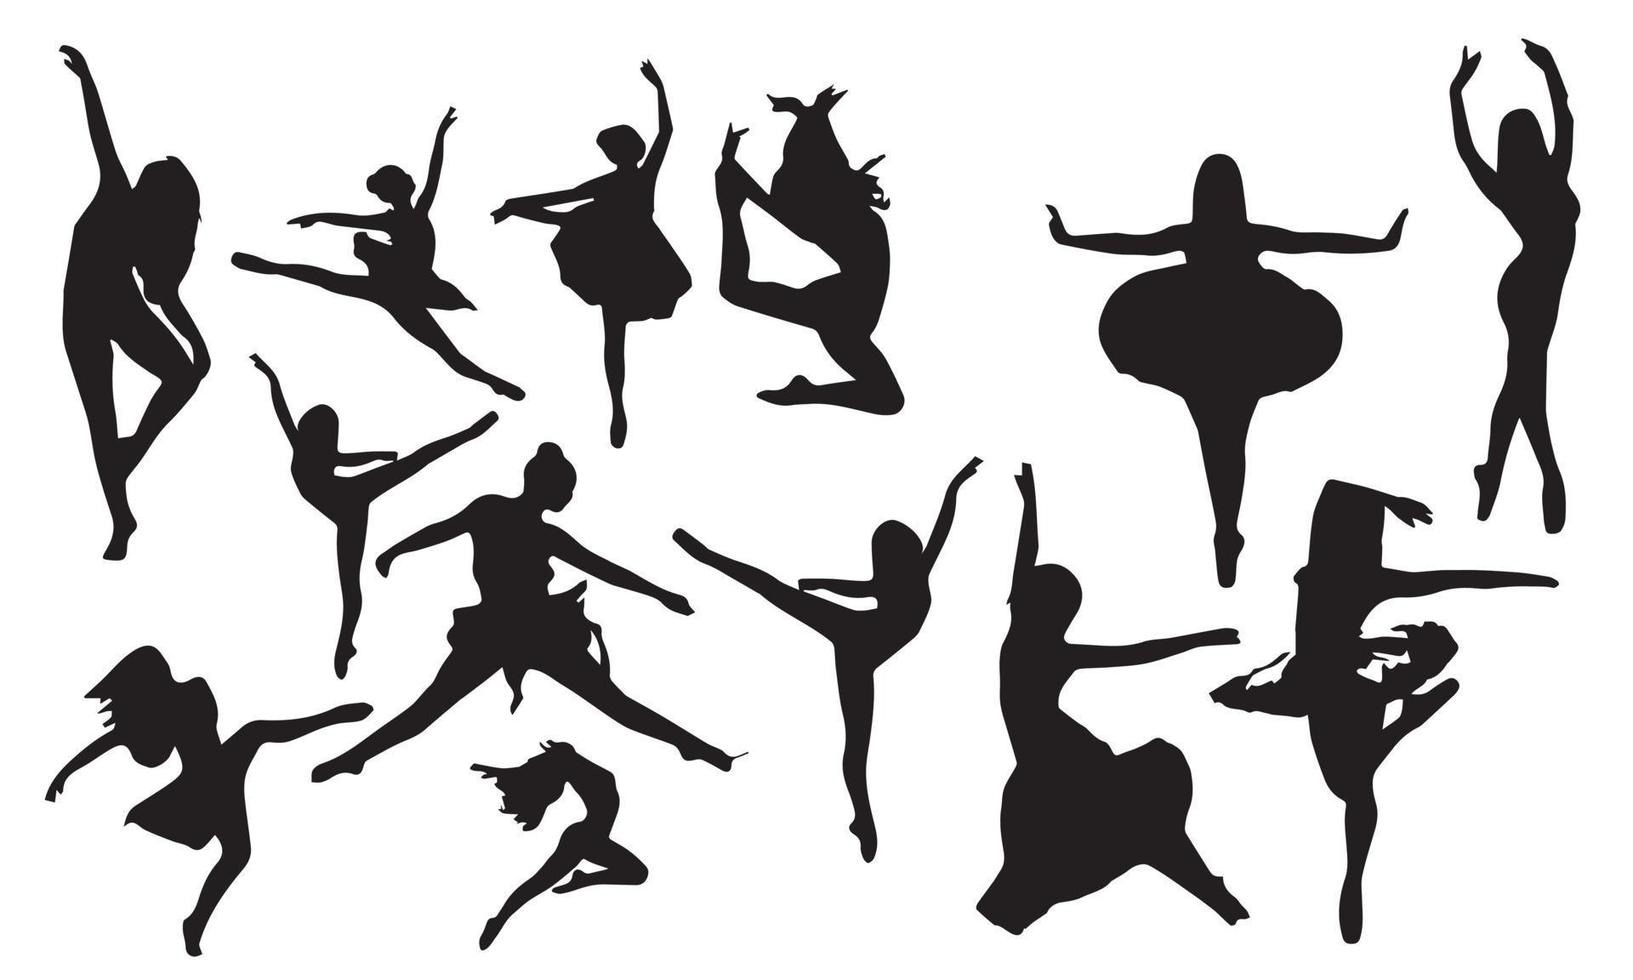 siluetas de mujeres hermosas bailando fondo blanco y negro vector